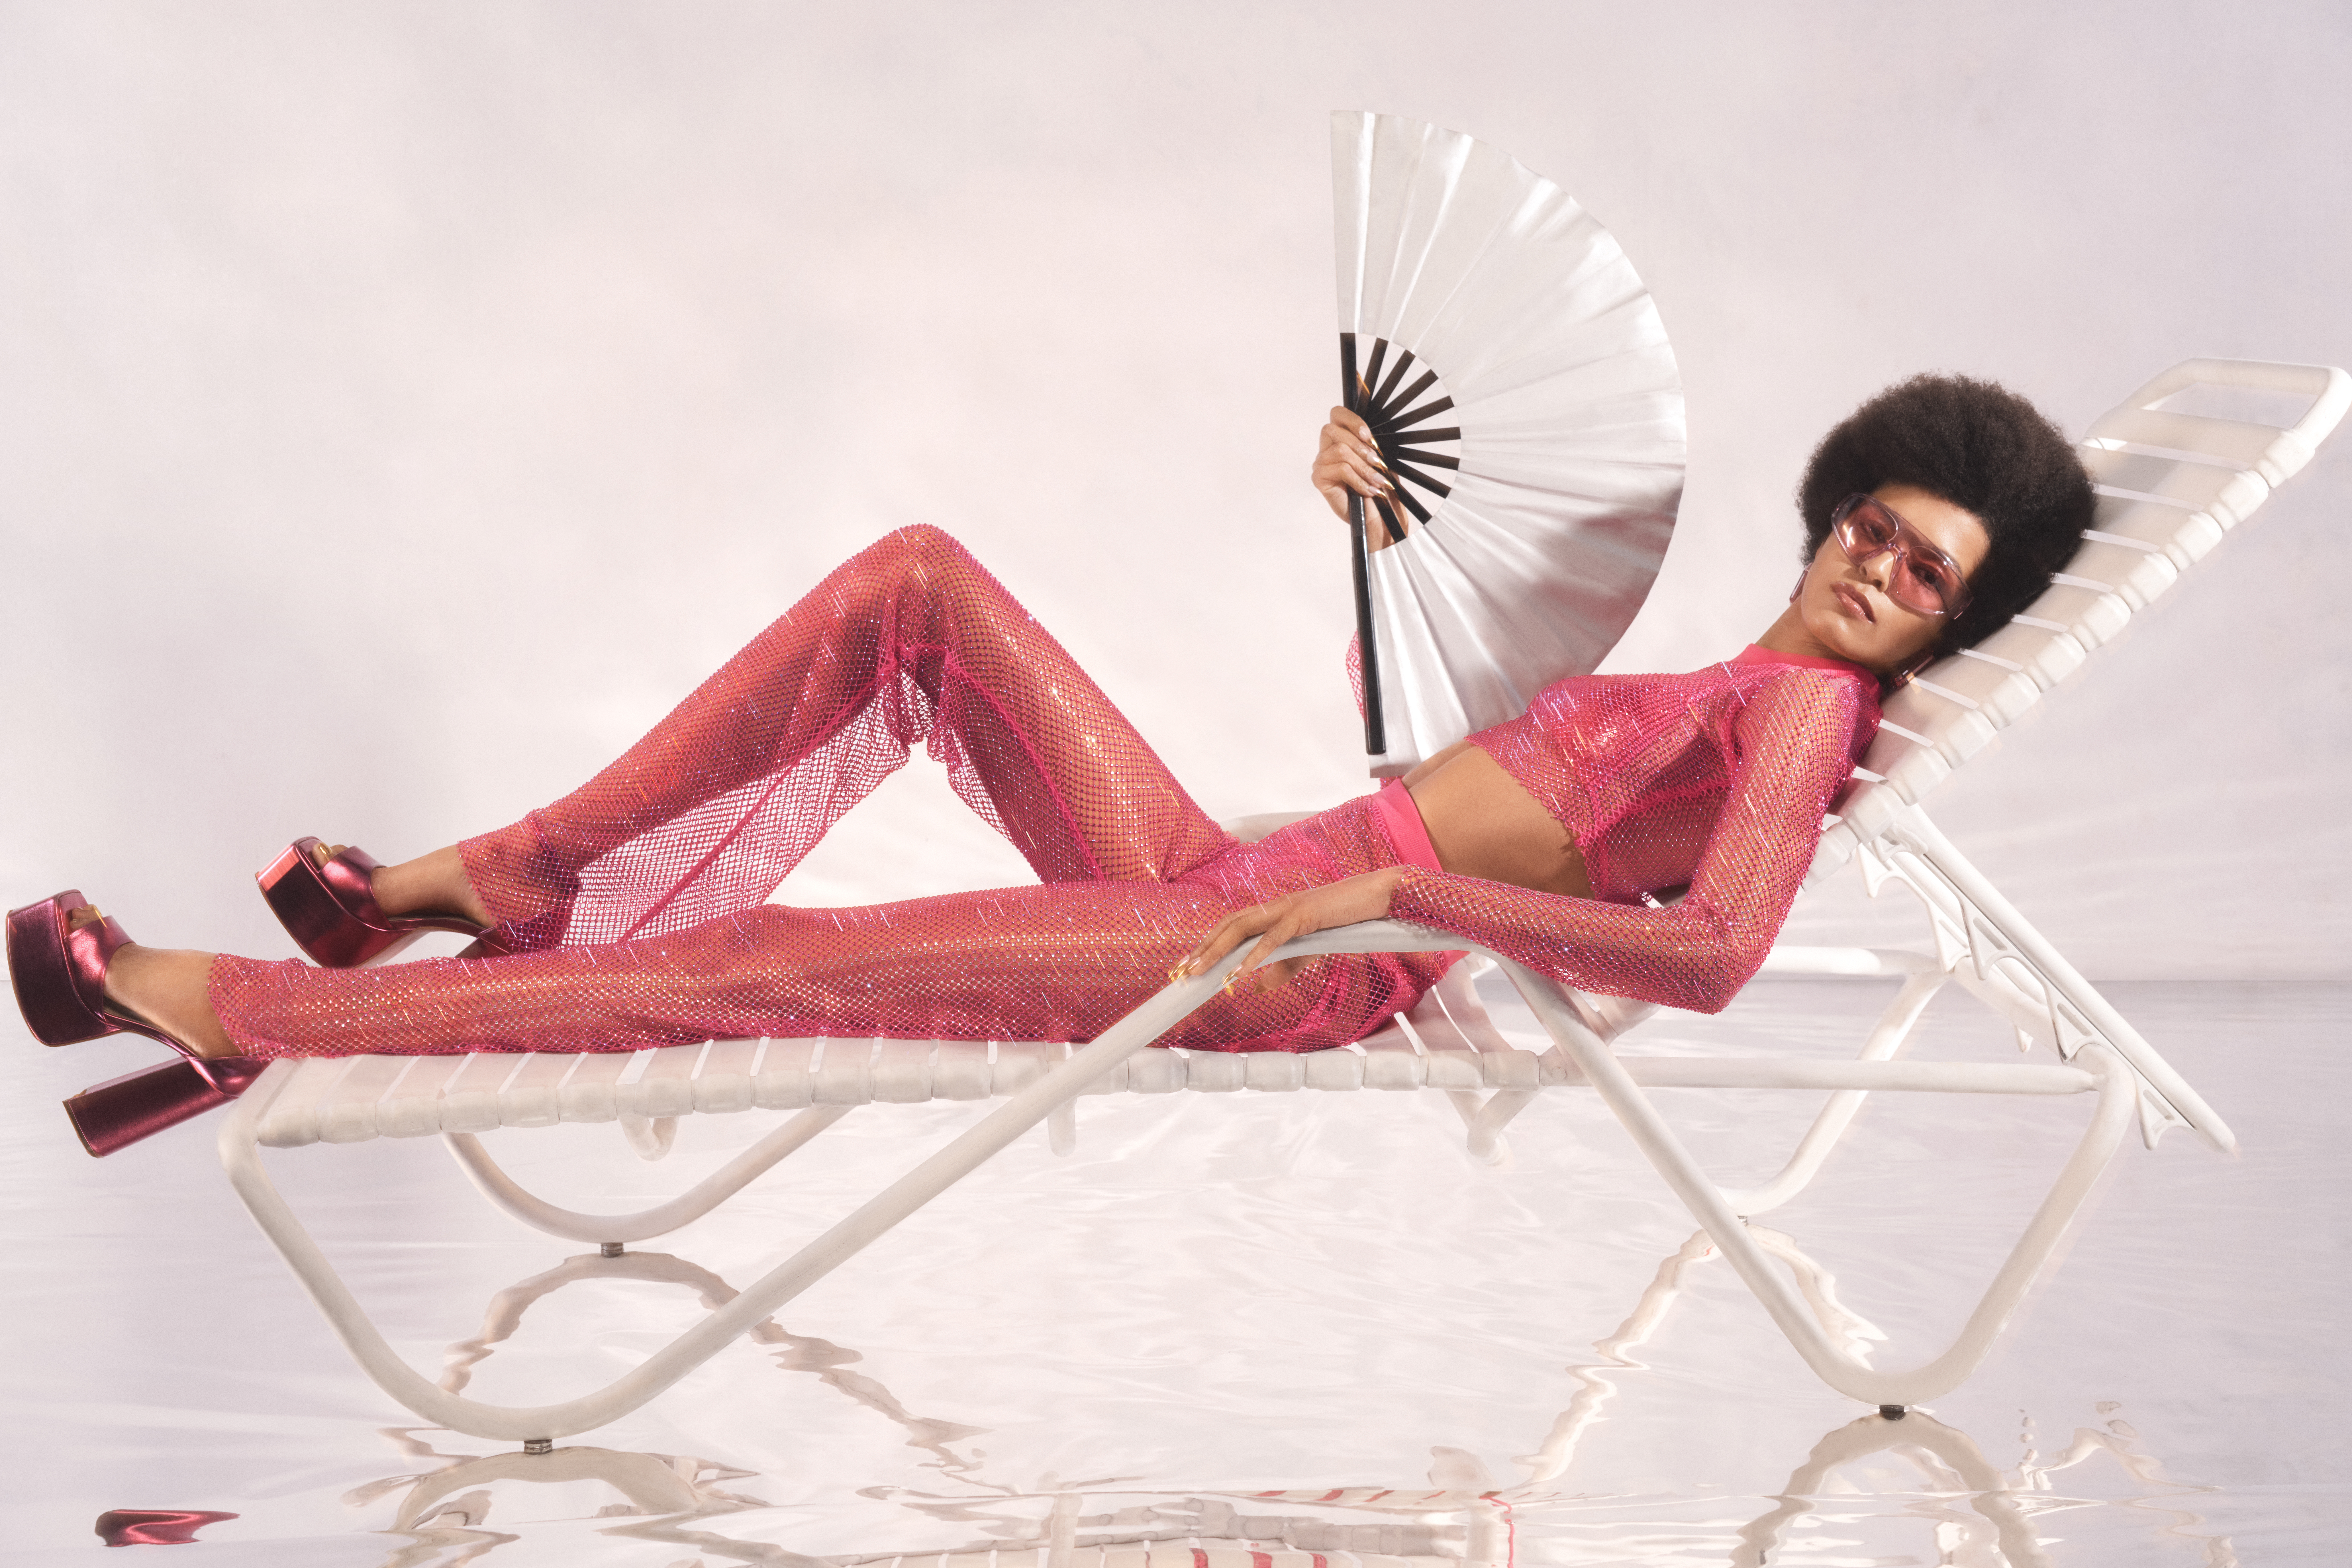 Laiza de Moura está deitada em uma cadeira de piscina branca e segura um leque branco. Ela usa calça, cropped de manga comprida, óculos de sol e salto plataforma rosas. Seu olhar está direcionado para a câmera.